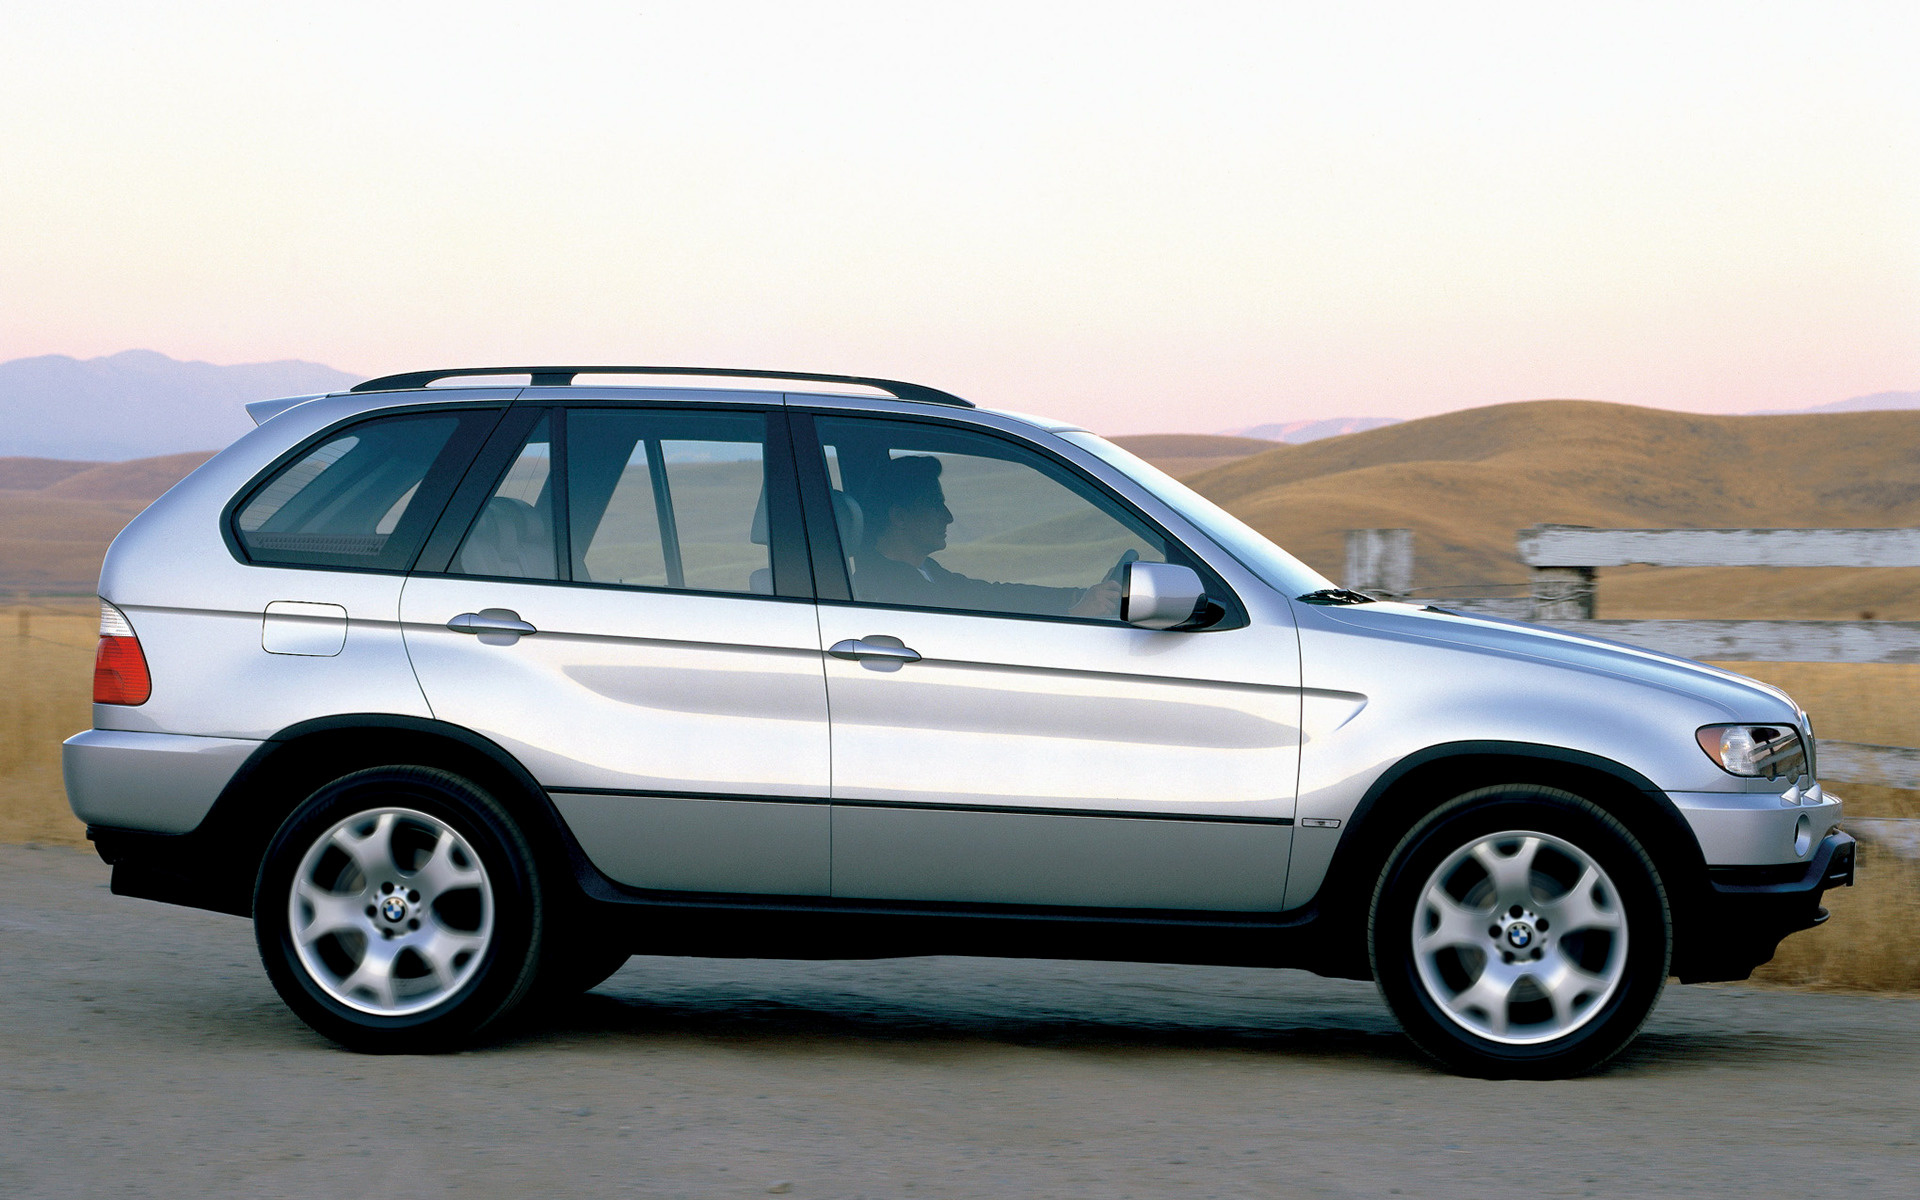 Bmw x5 2003. БМВ х5 1999-2003. БМВ х5 е53 1999. BMW x5 e53 1999. BMW x5 2000.